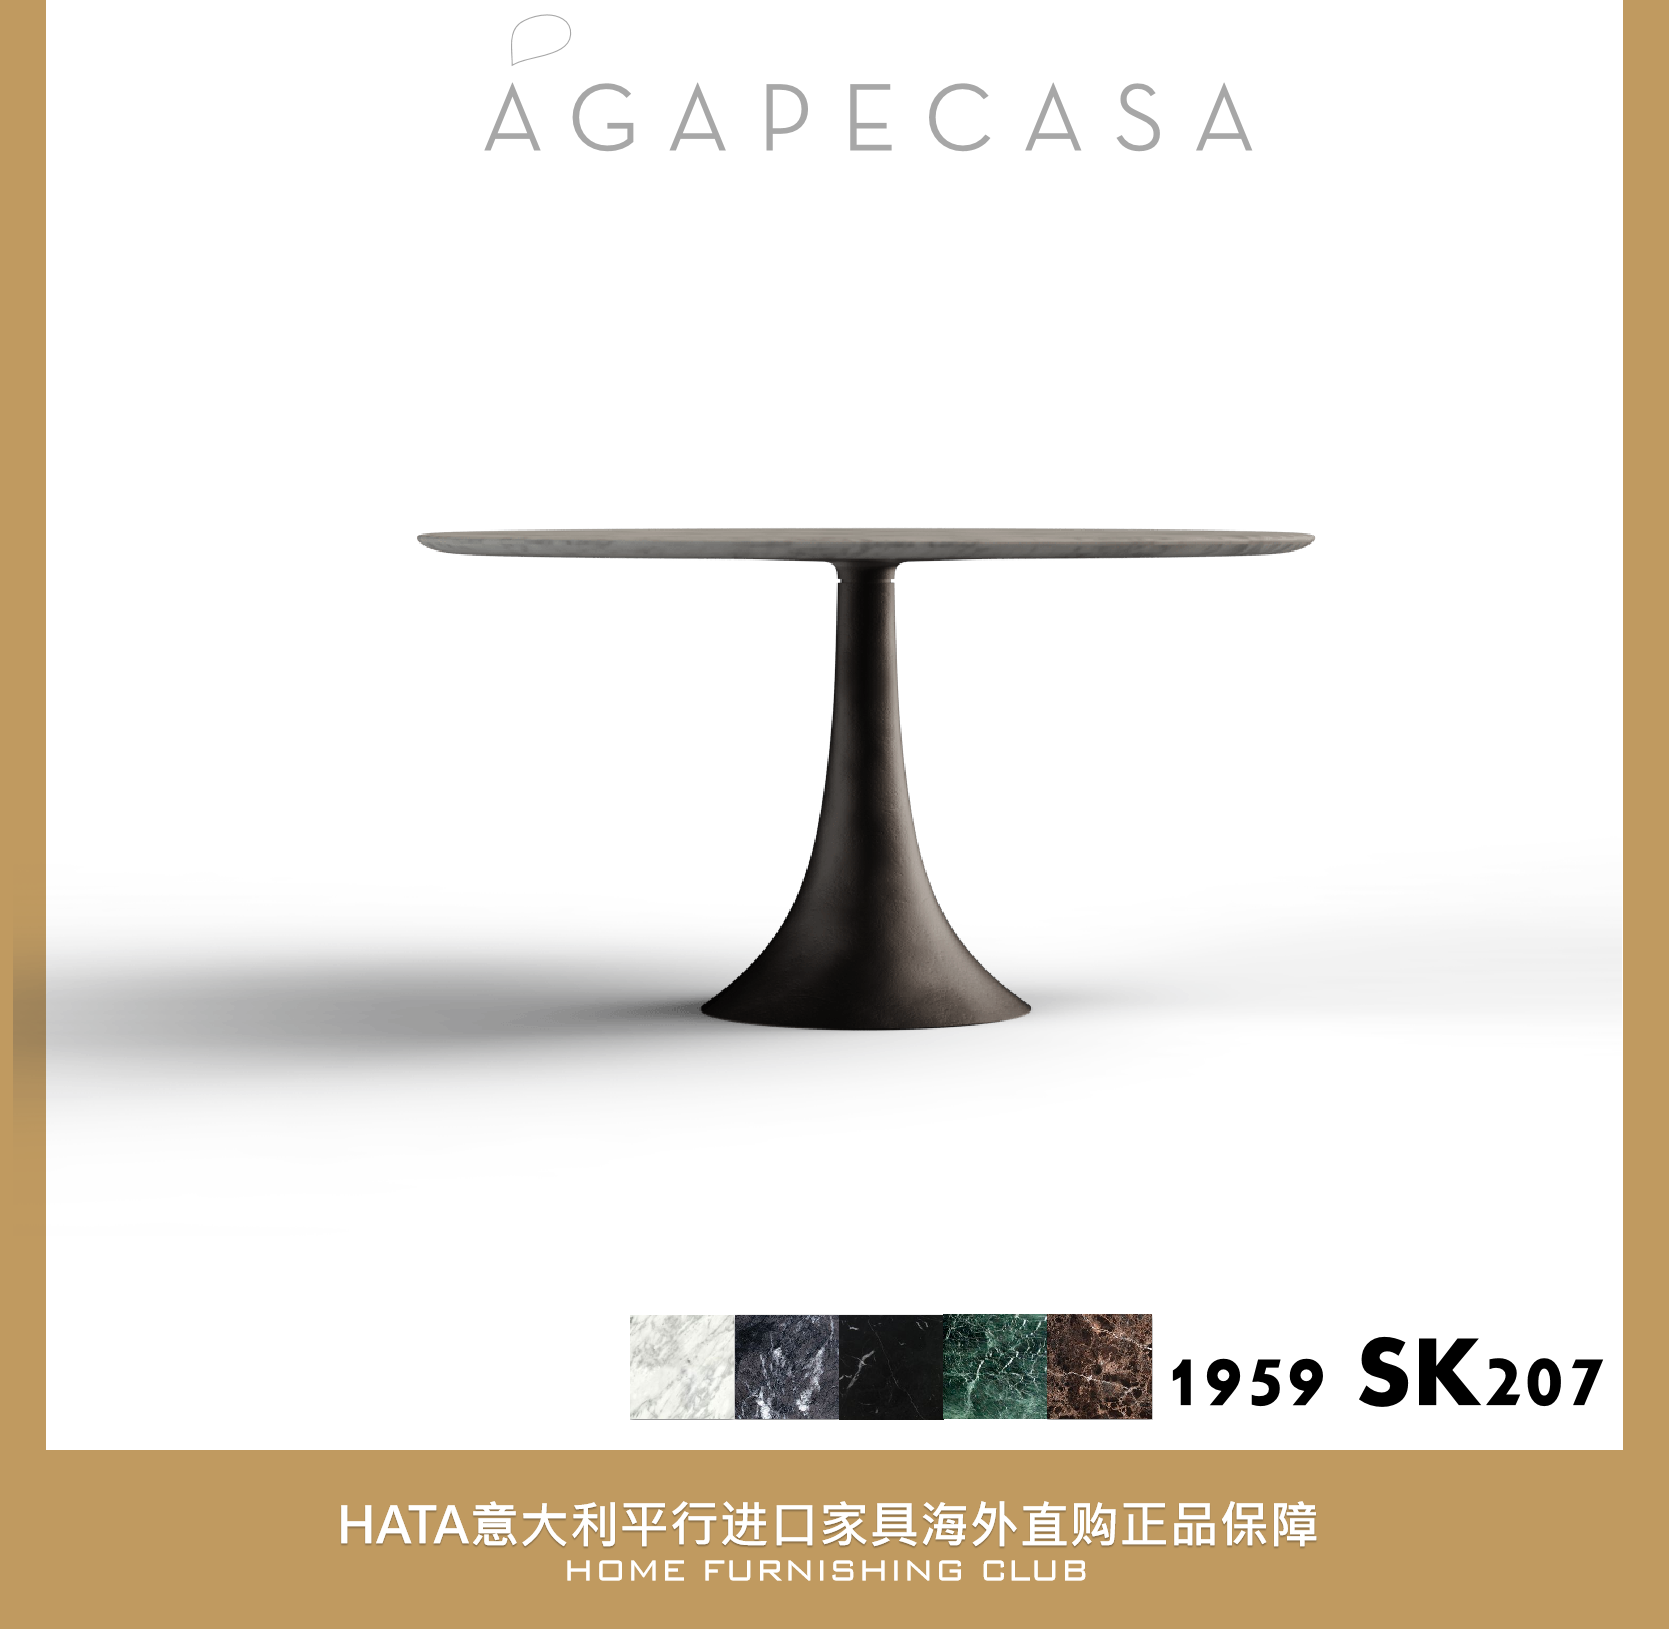 agapecasa 圆形大理石餐桌意大利进口家具海外代购正版1959 SK207